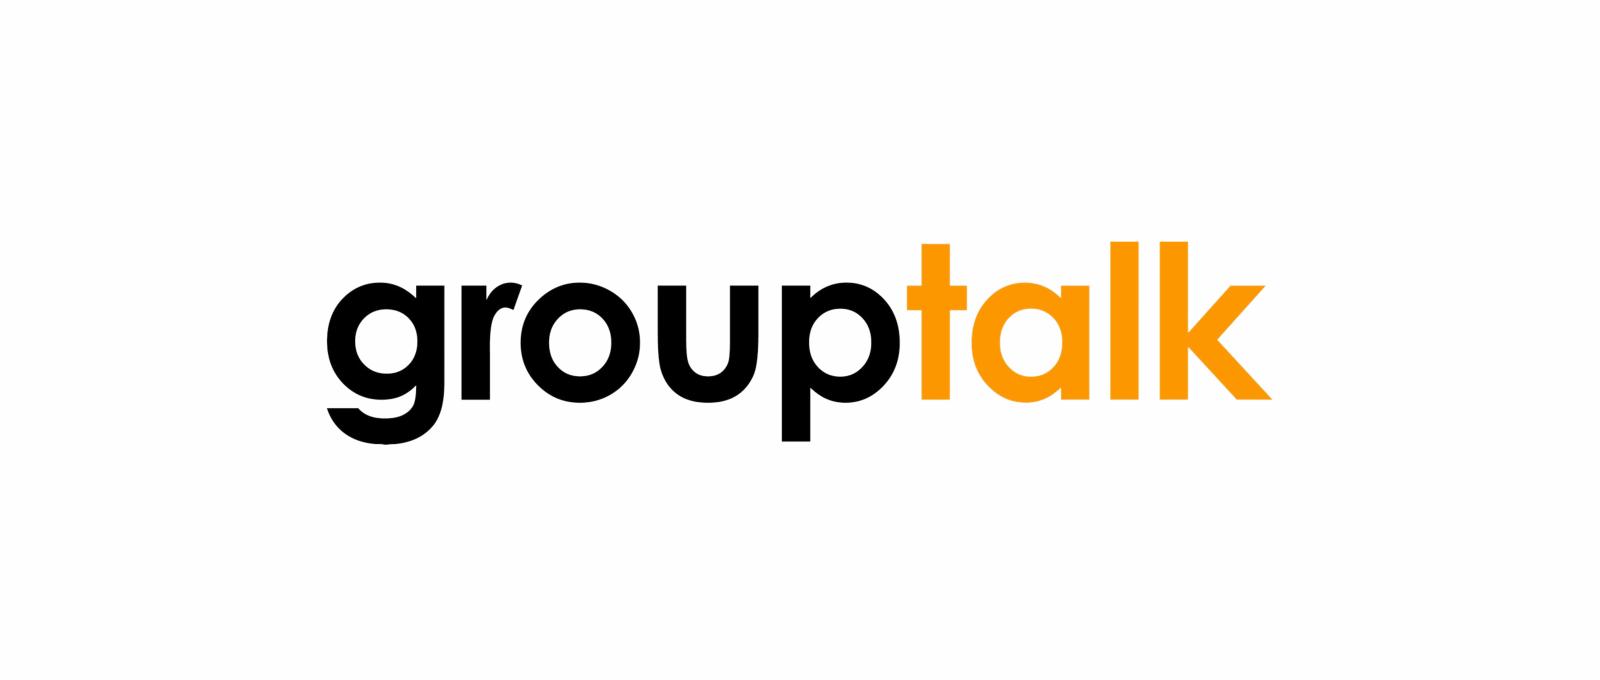 GroupTalk logo